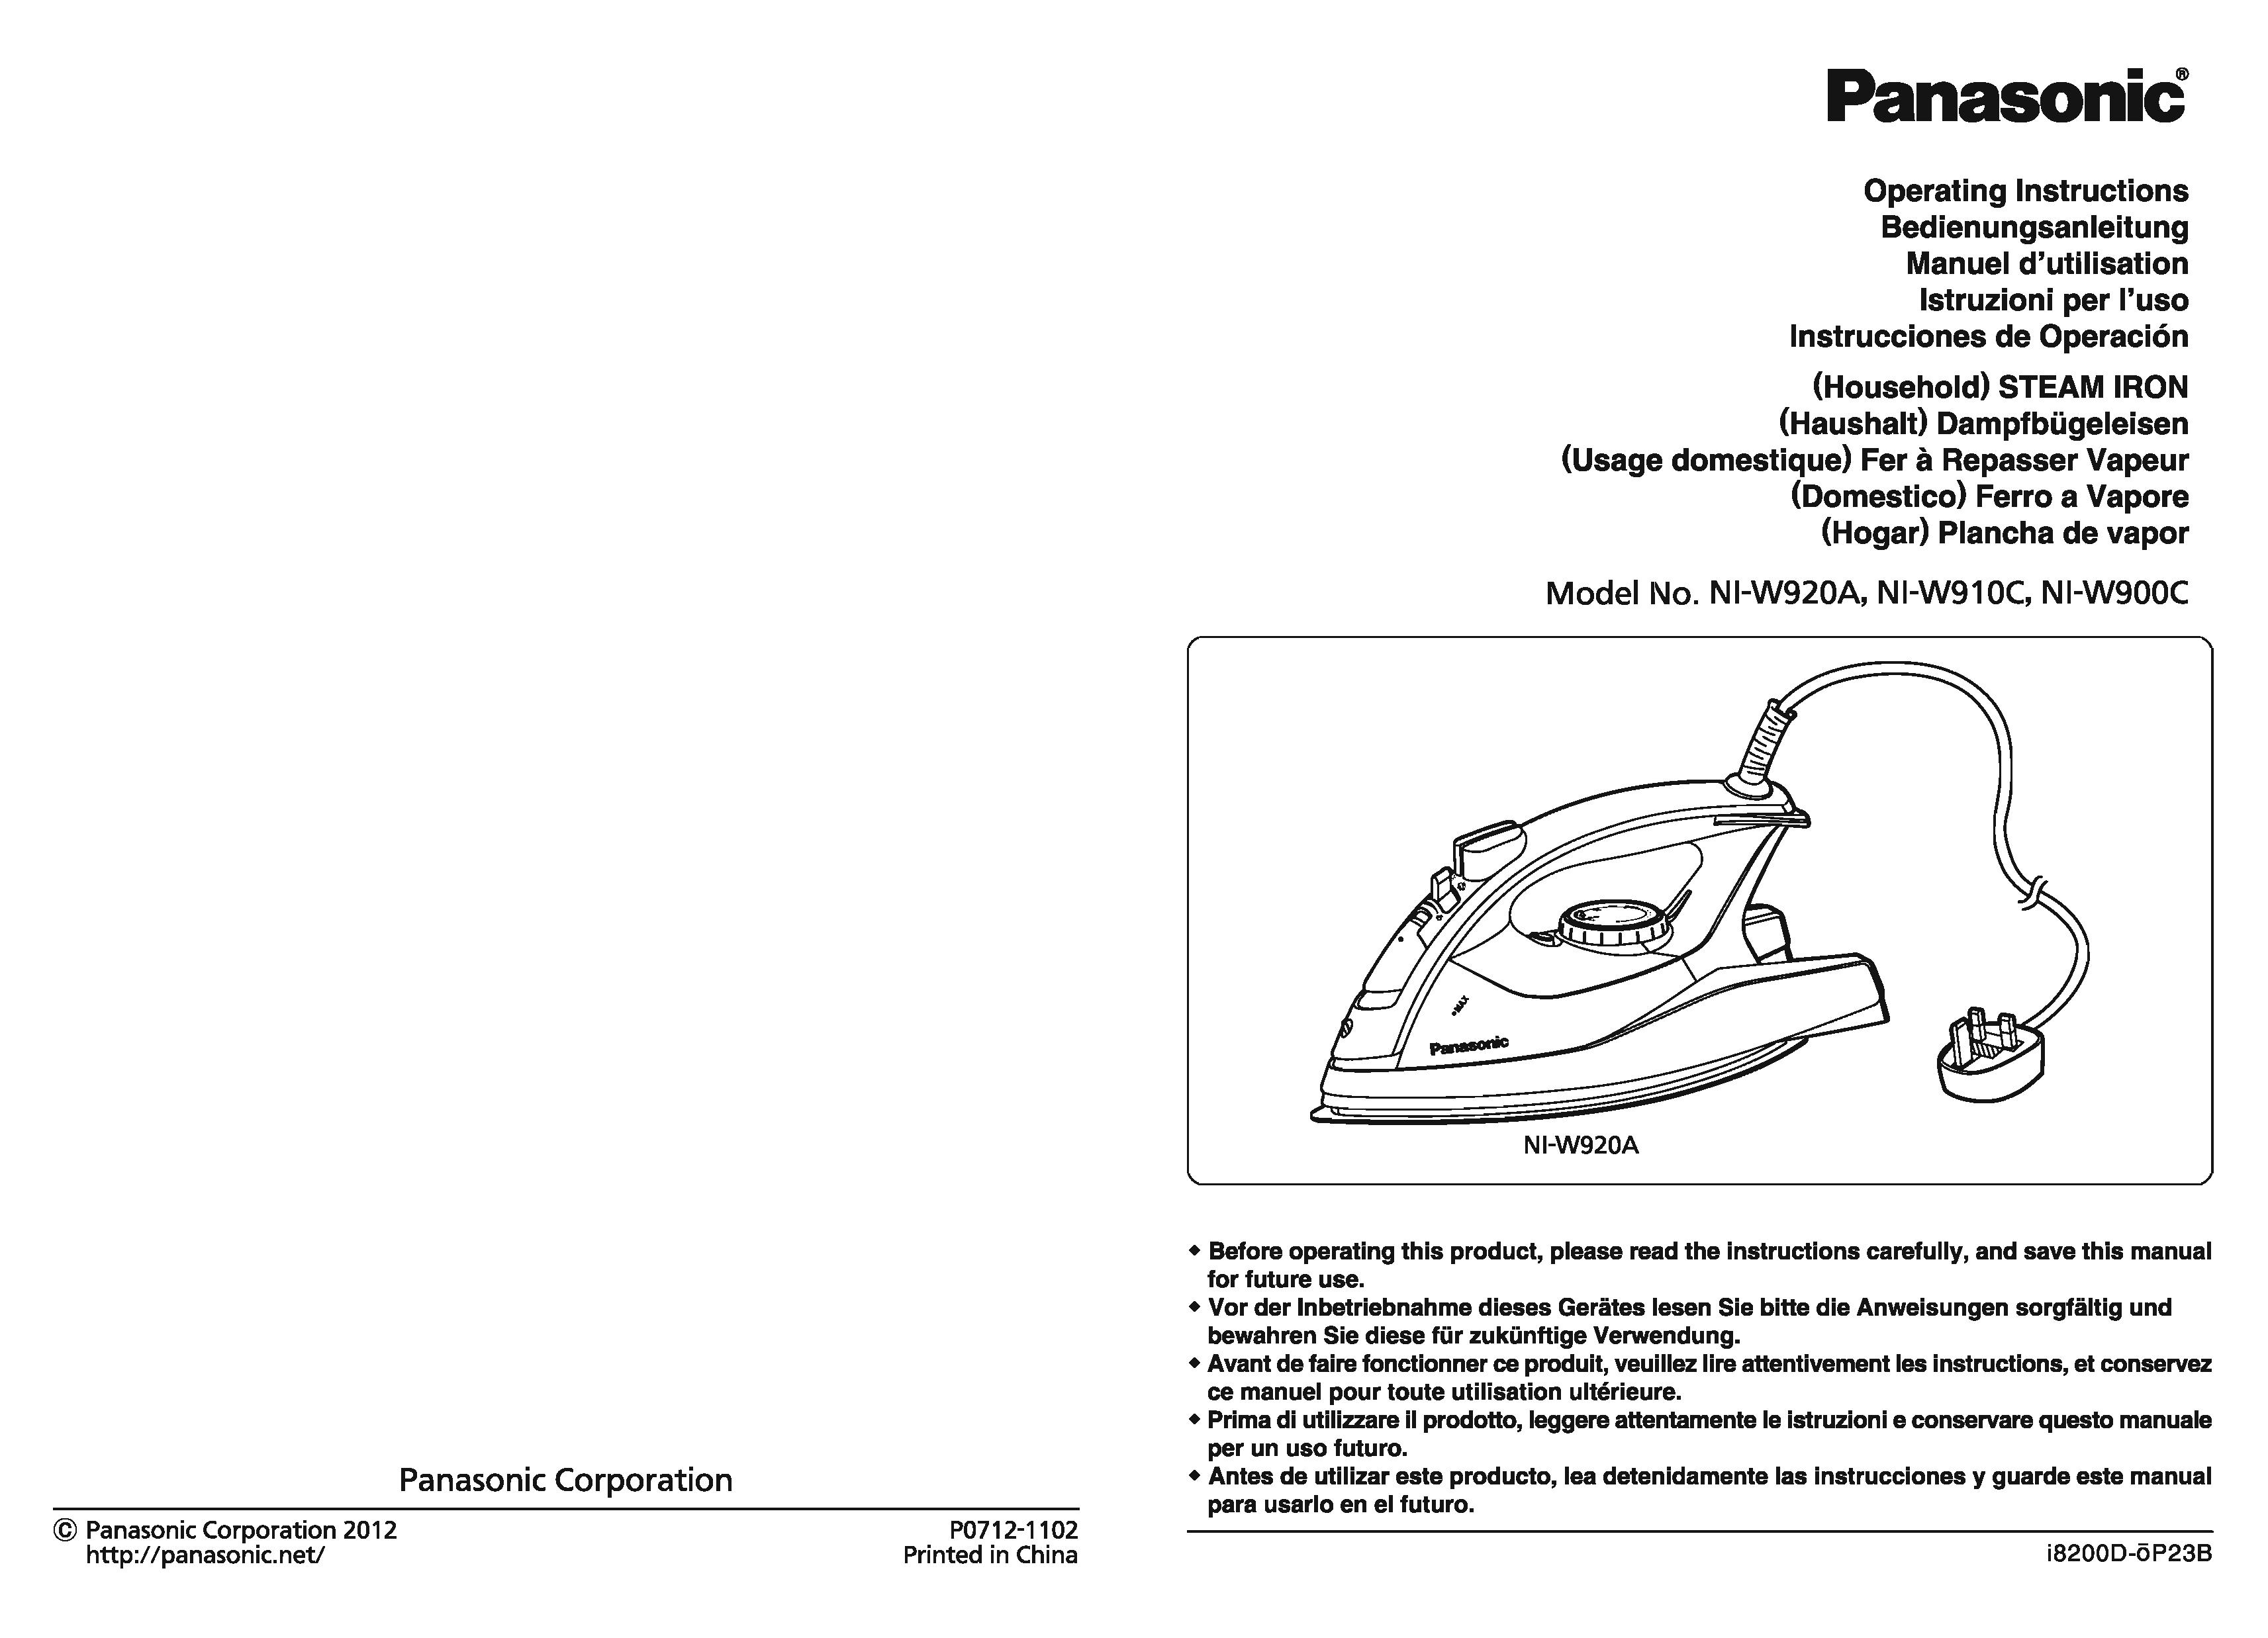 Panasonic NI-W900C Iron User Manual